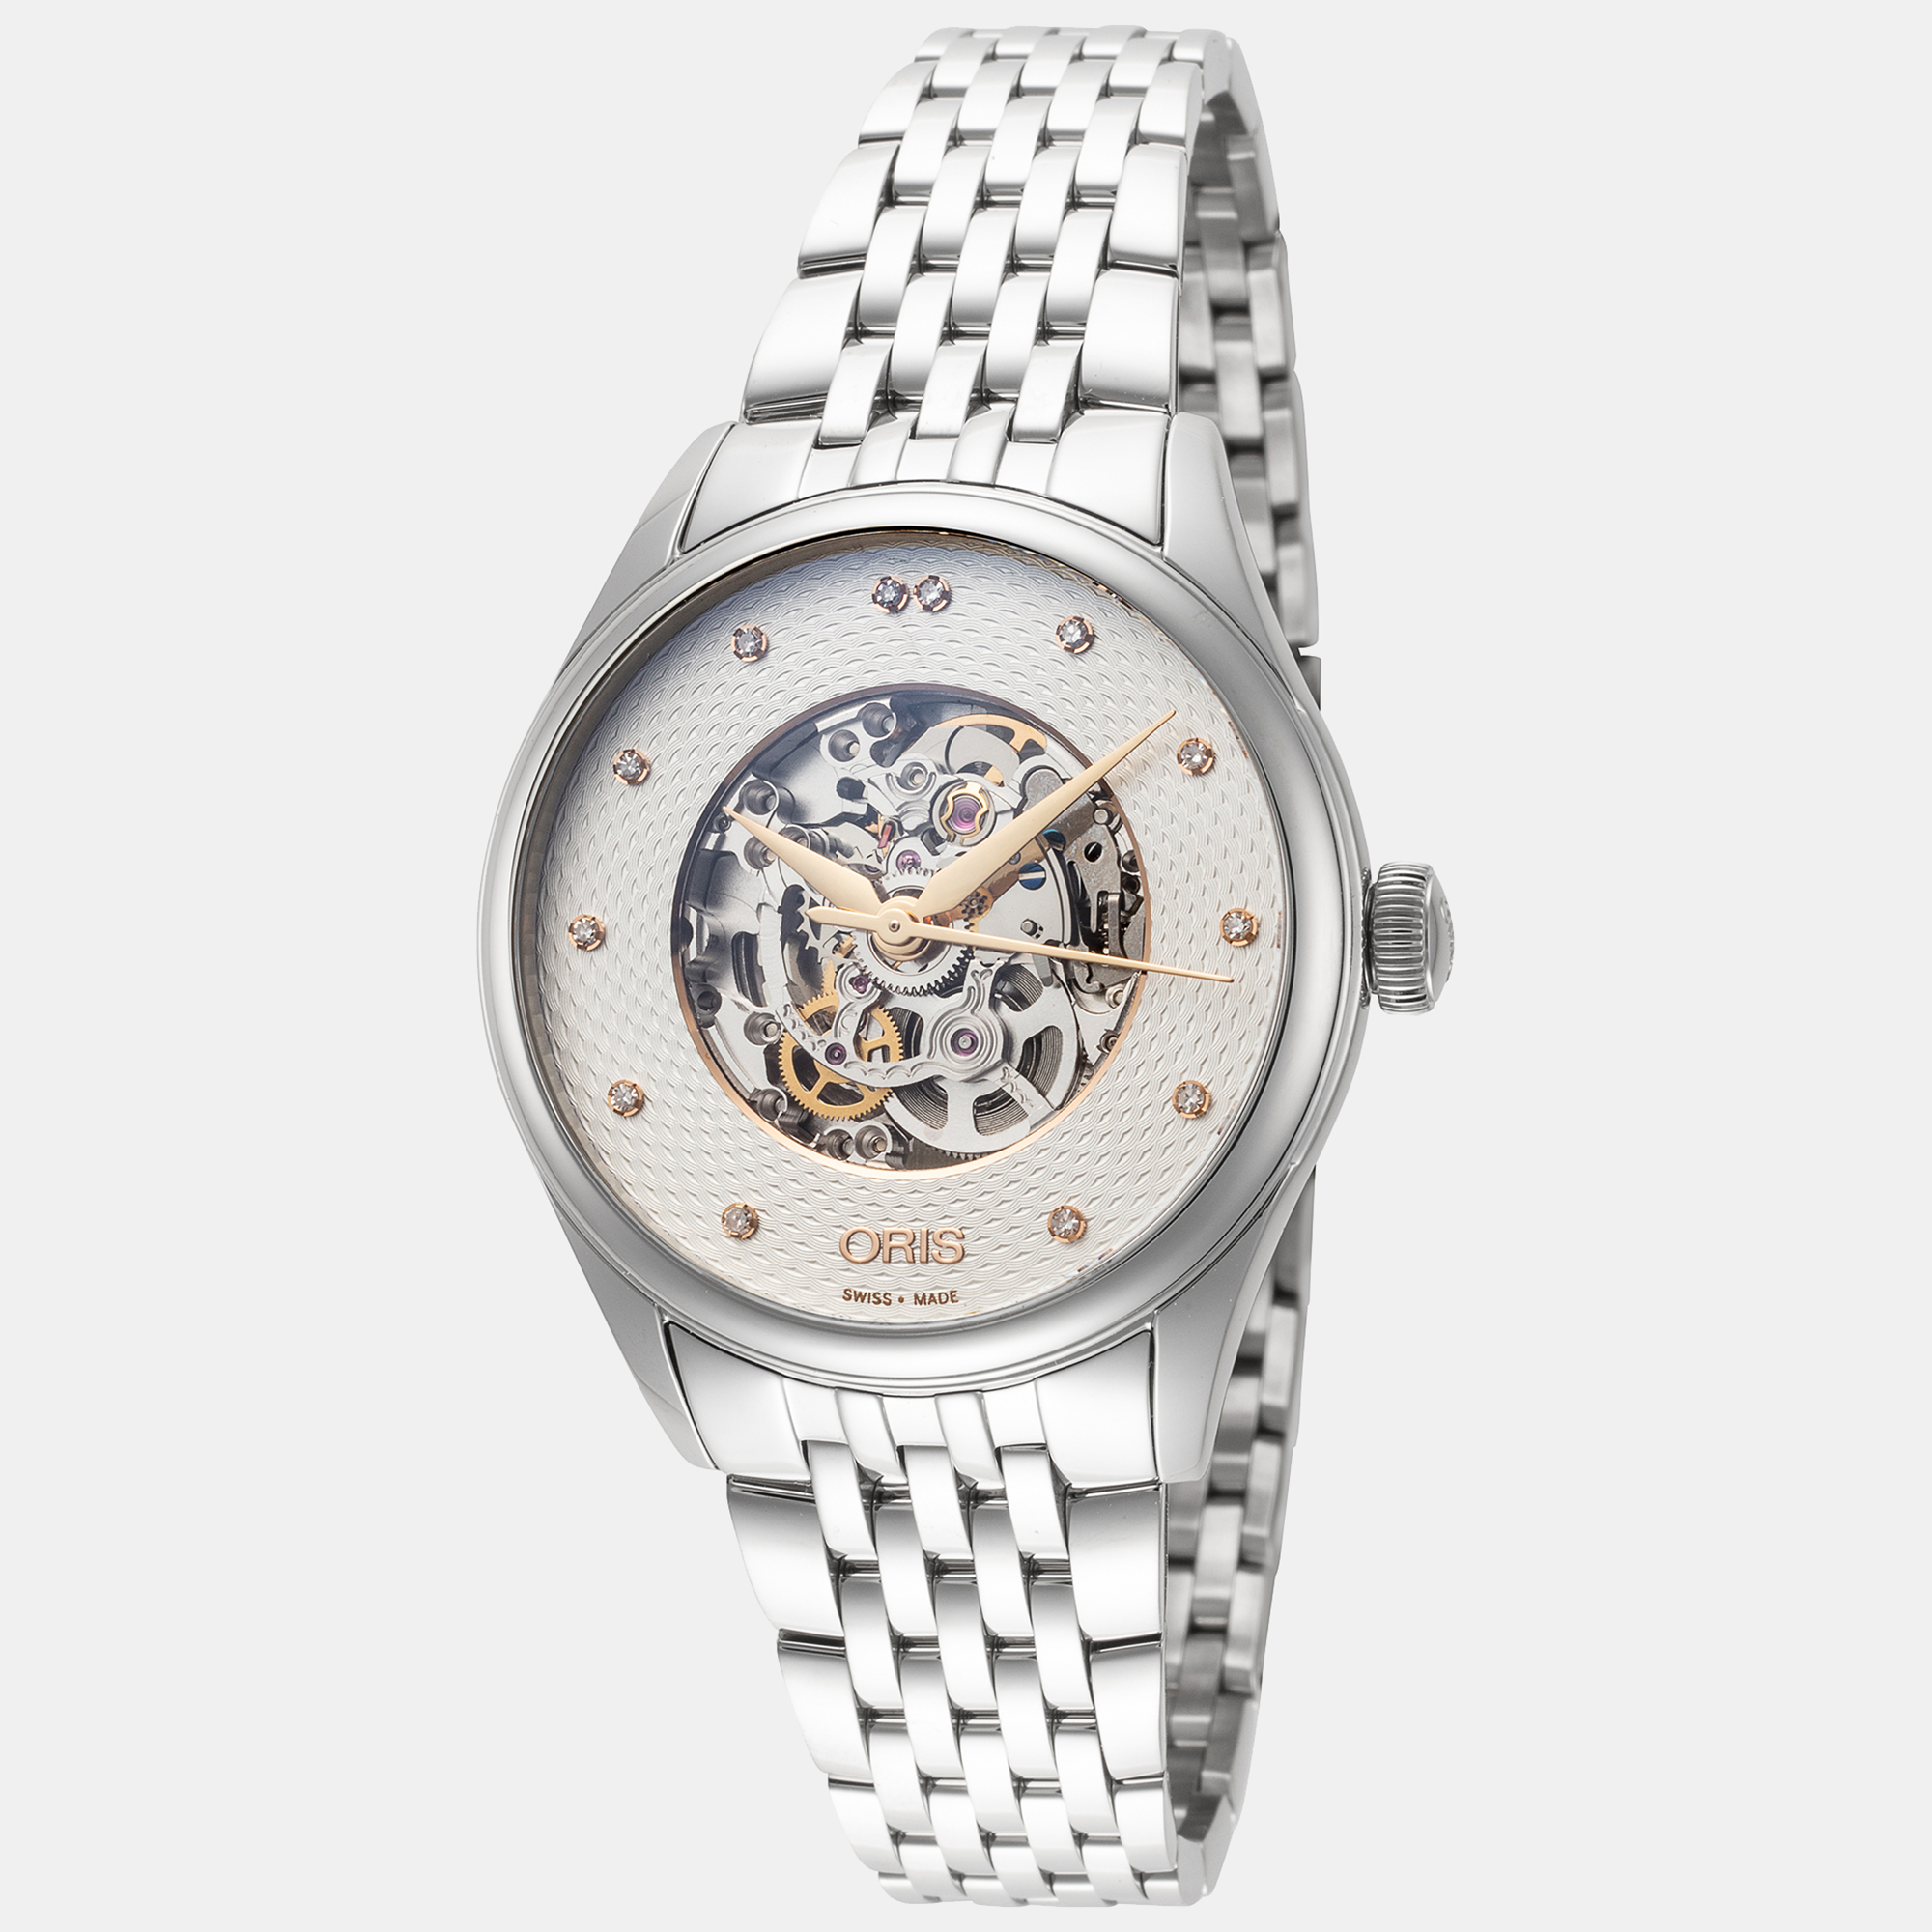 Pre-owned Oris Women's 01-560-7724-4031-07-8-17-79 Artelier Skeleton 33mm Automatic Watch In Silver